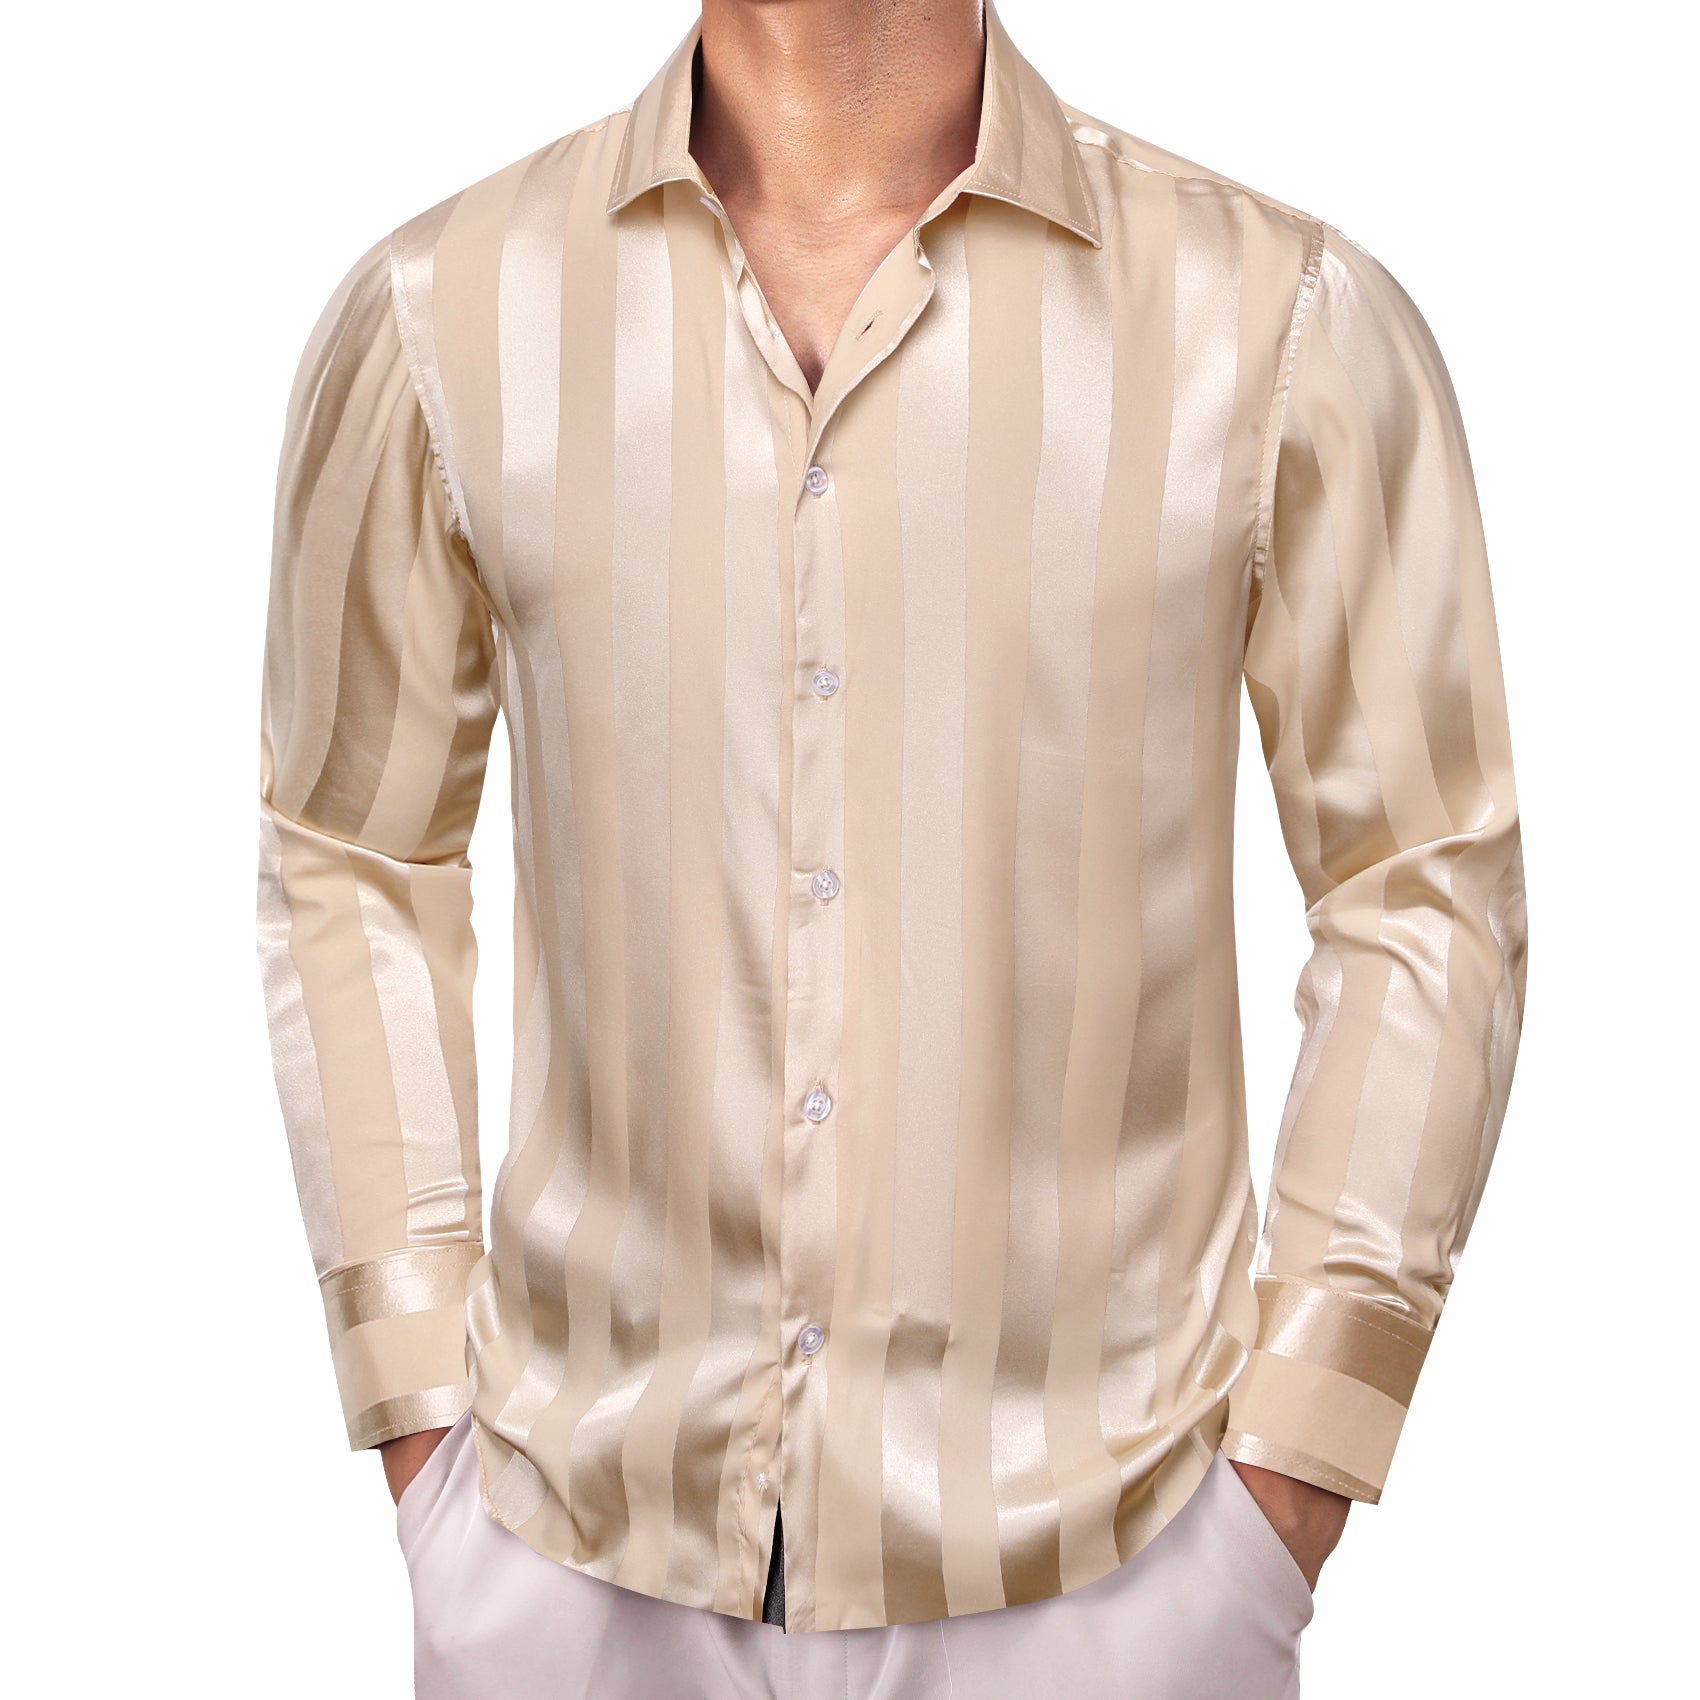 Barry.wang Bisque Striped Silk Men's Shirt